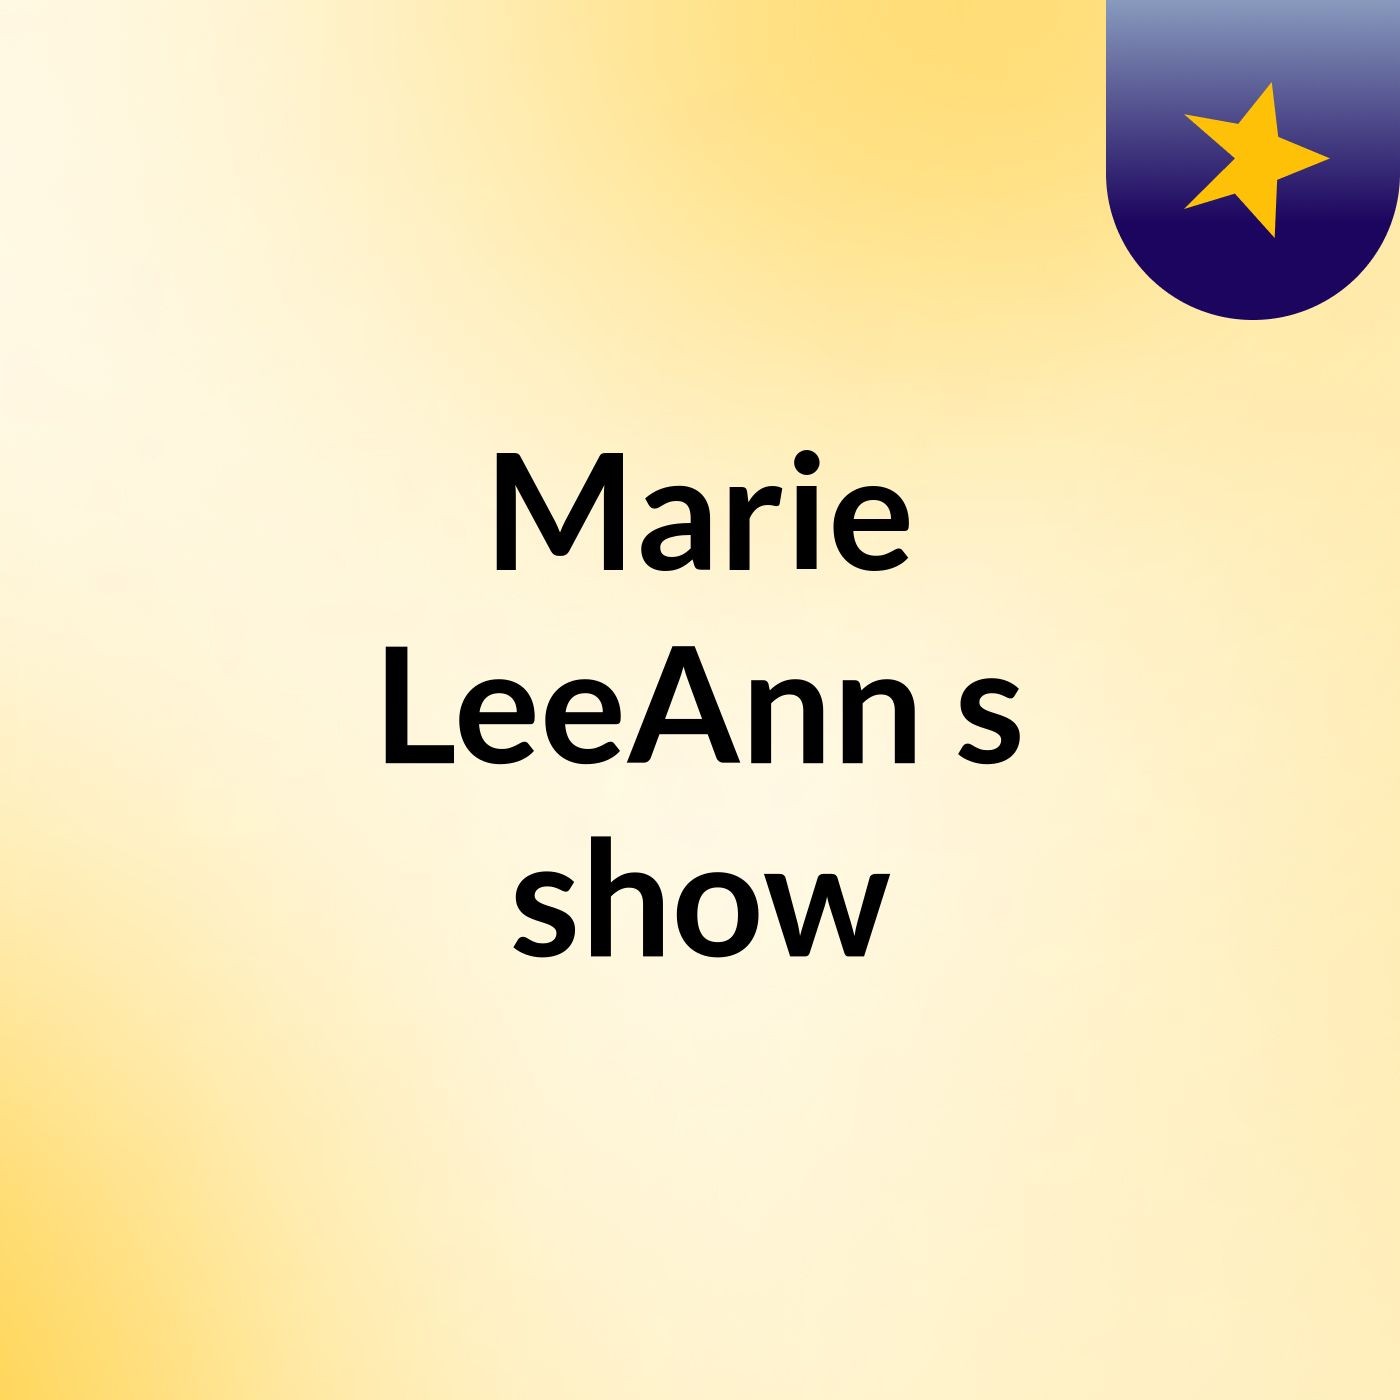 Marie LeeAnn's show